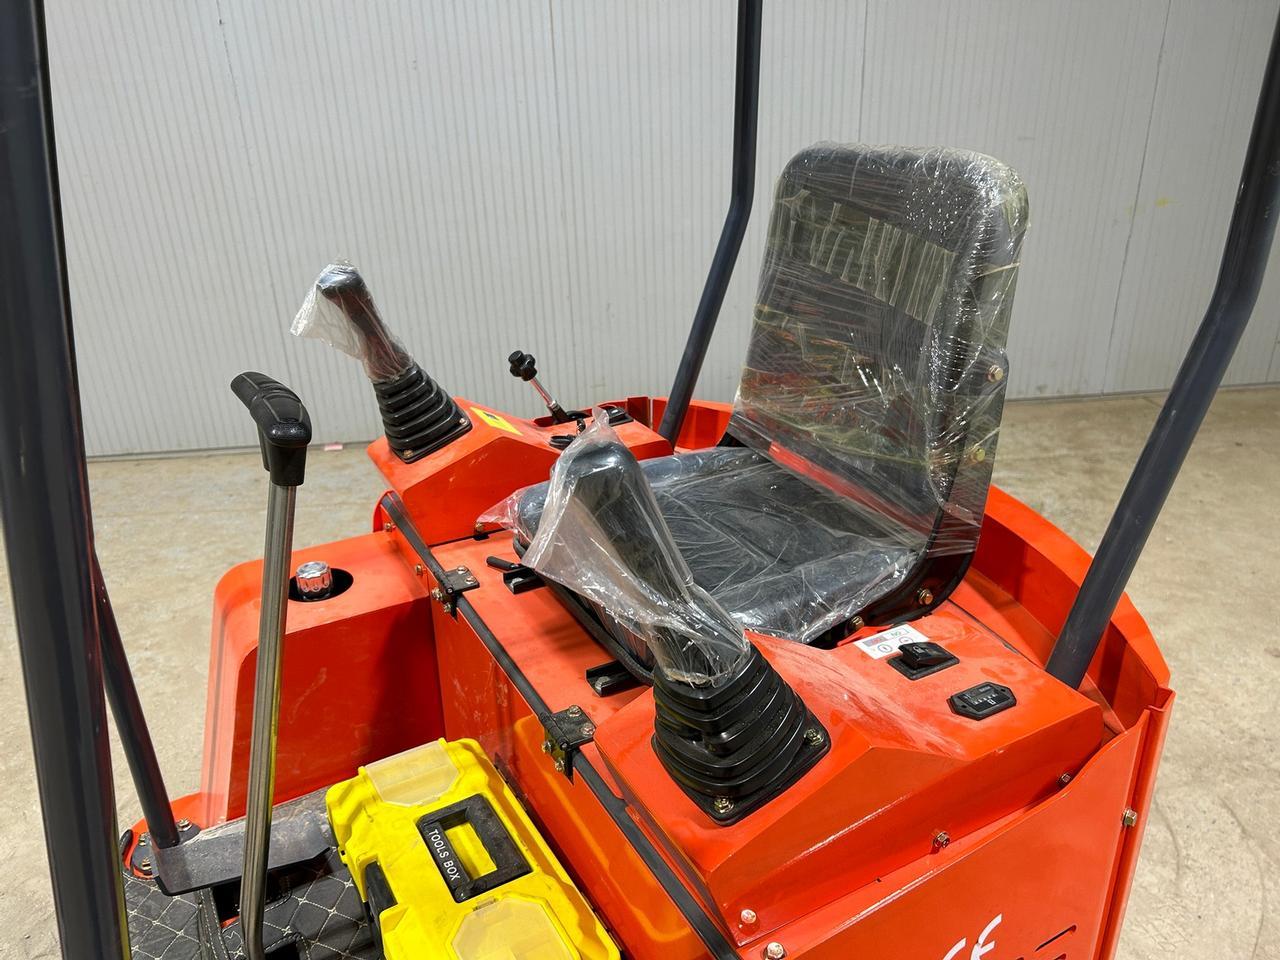 AGROTK H15 Mini Excavator